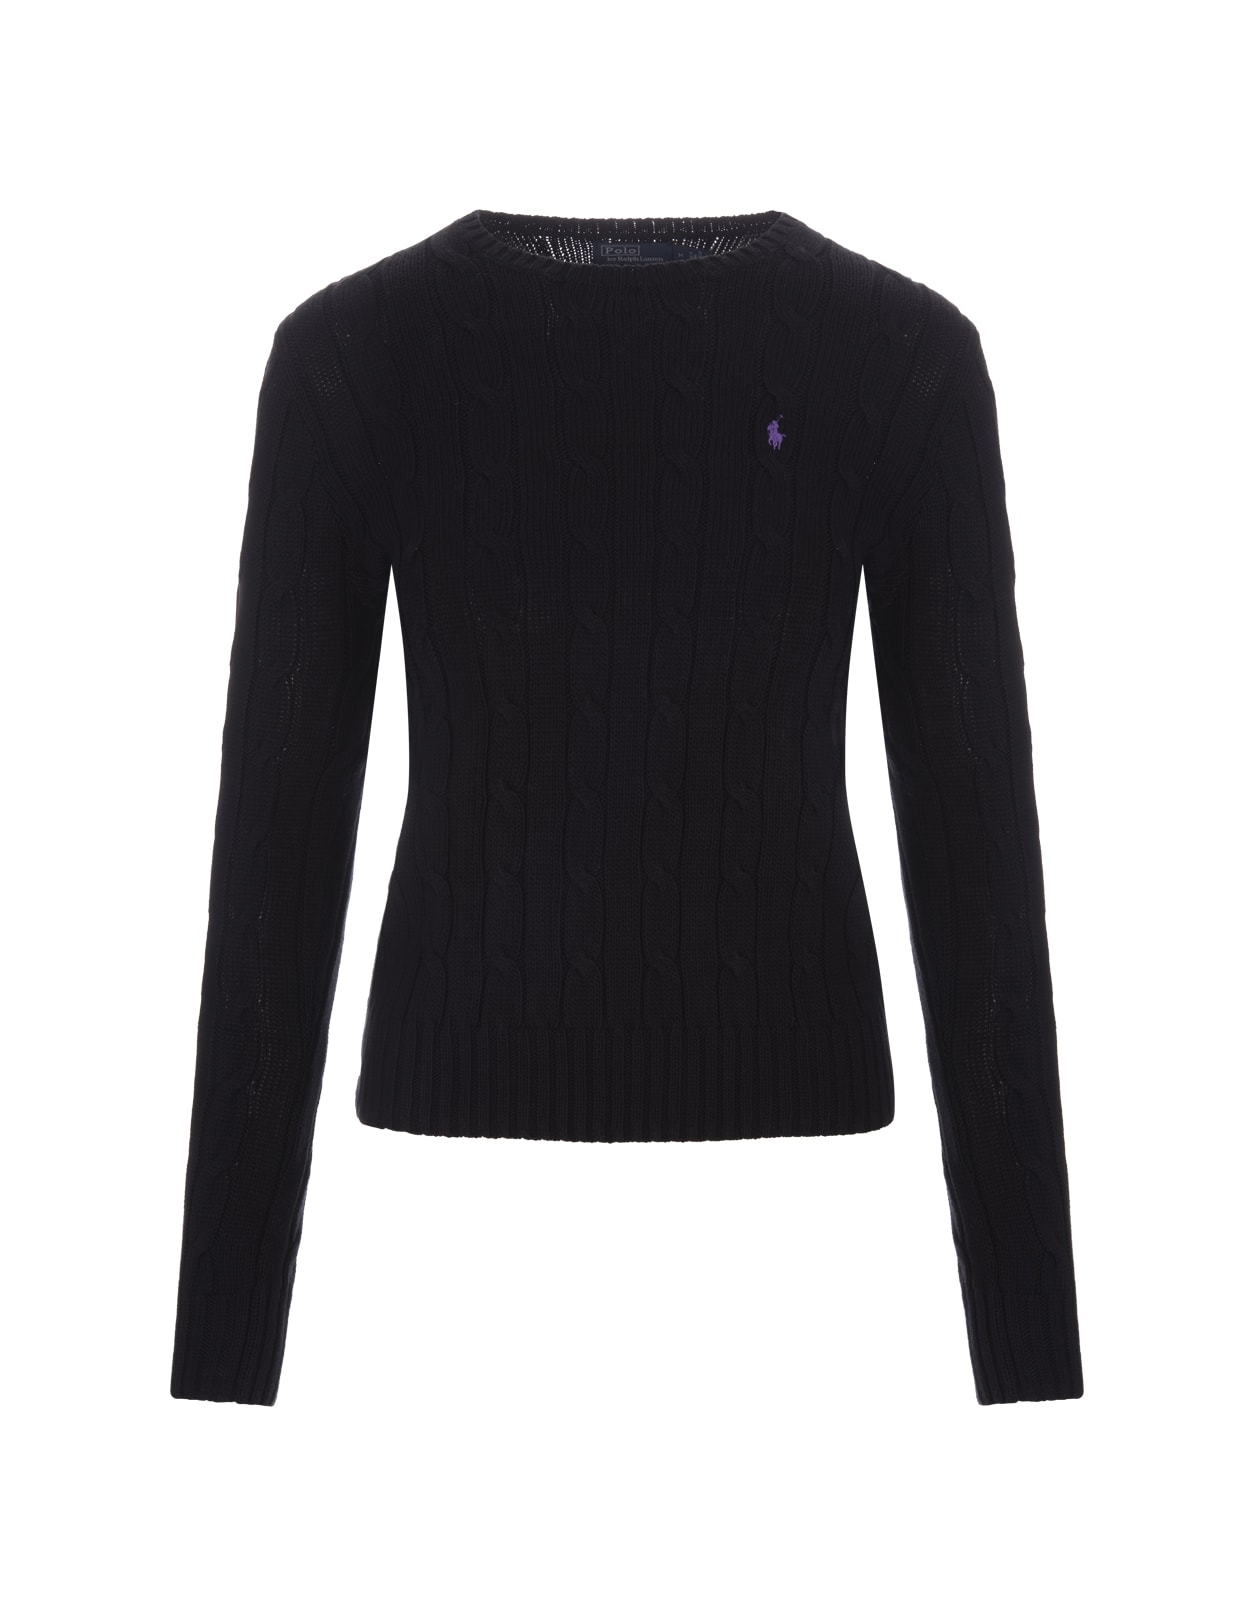 Ralph Lauren Crew Neck Sweater In Black Braided Knit